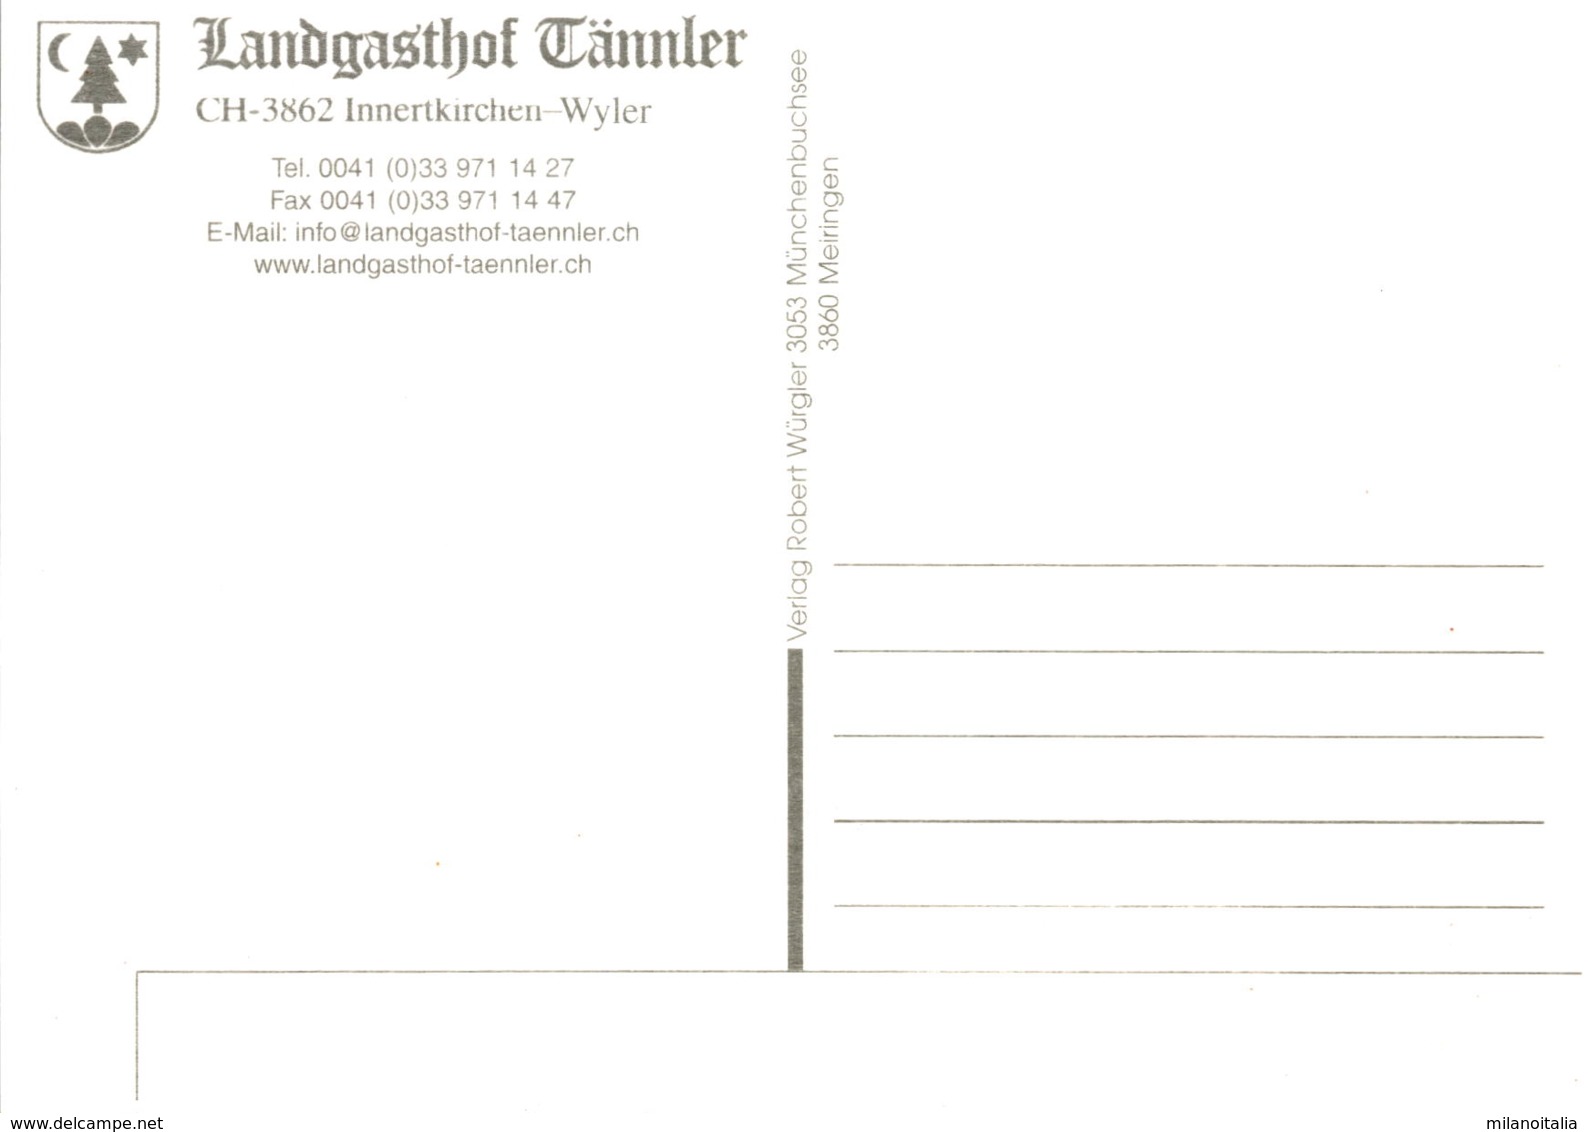 Landgasthof Tännler - Innertkirchen-Wyler - Innertkirchen